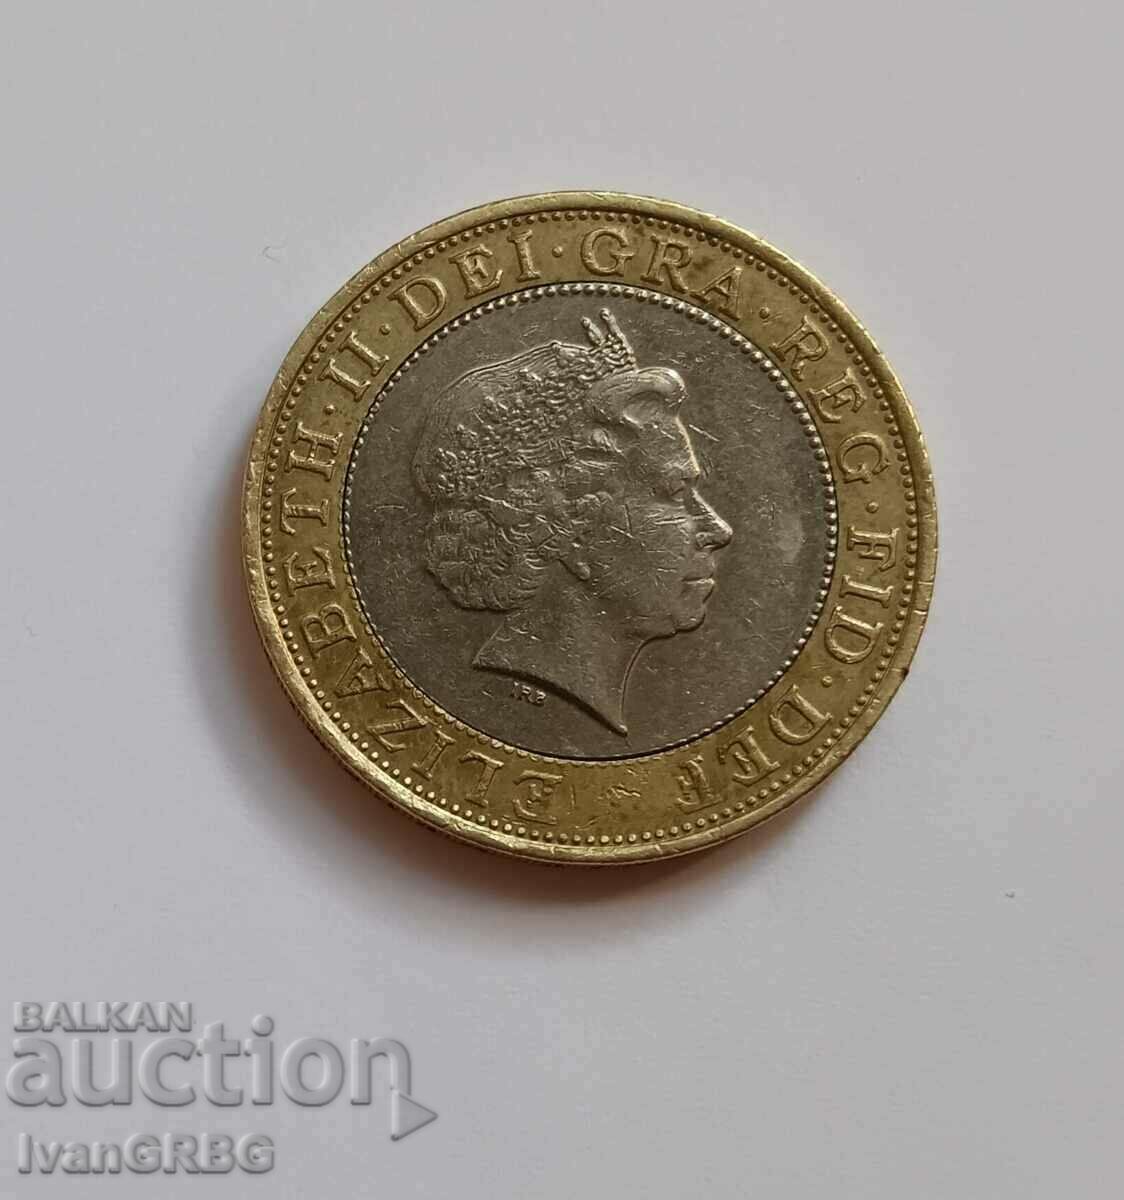 2 λίρες Μεγάλη Βρετανία 2006 Ιωβηλαίο Κέρμα Αγγλία